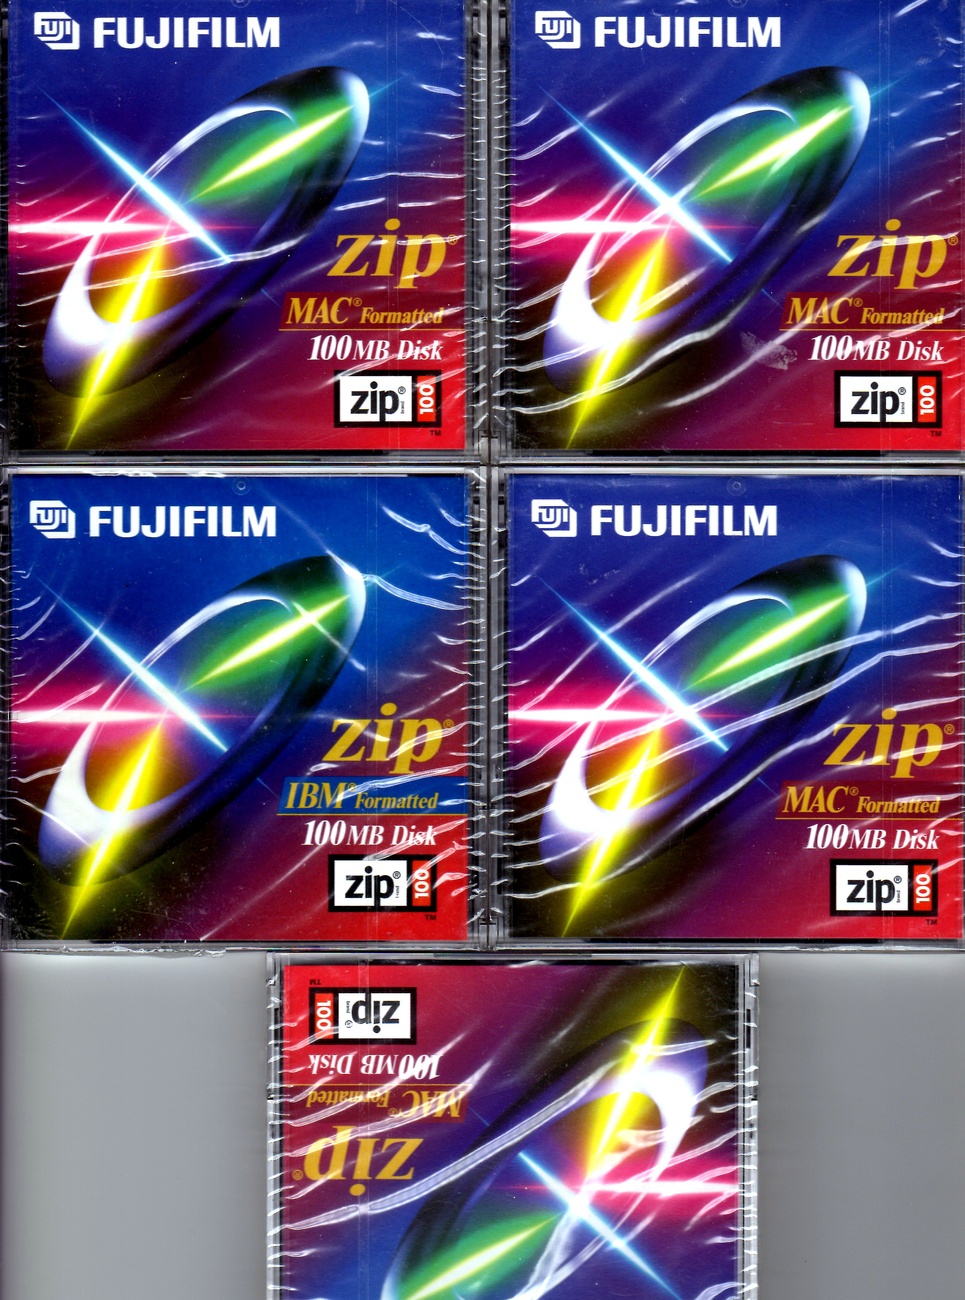 Fujifilm(R) Zip 100MB Disks, Mac Format, Pack Of 5 - $9.00